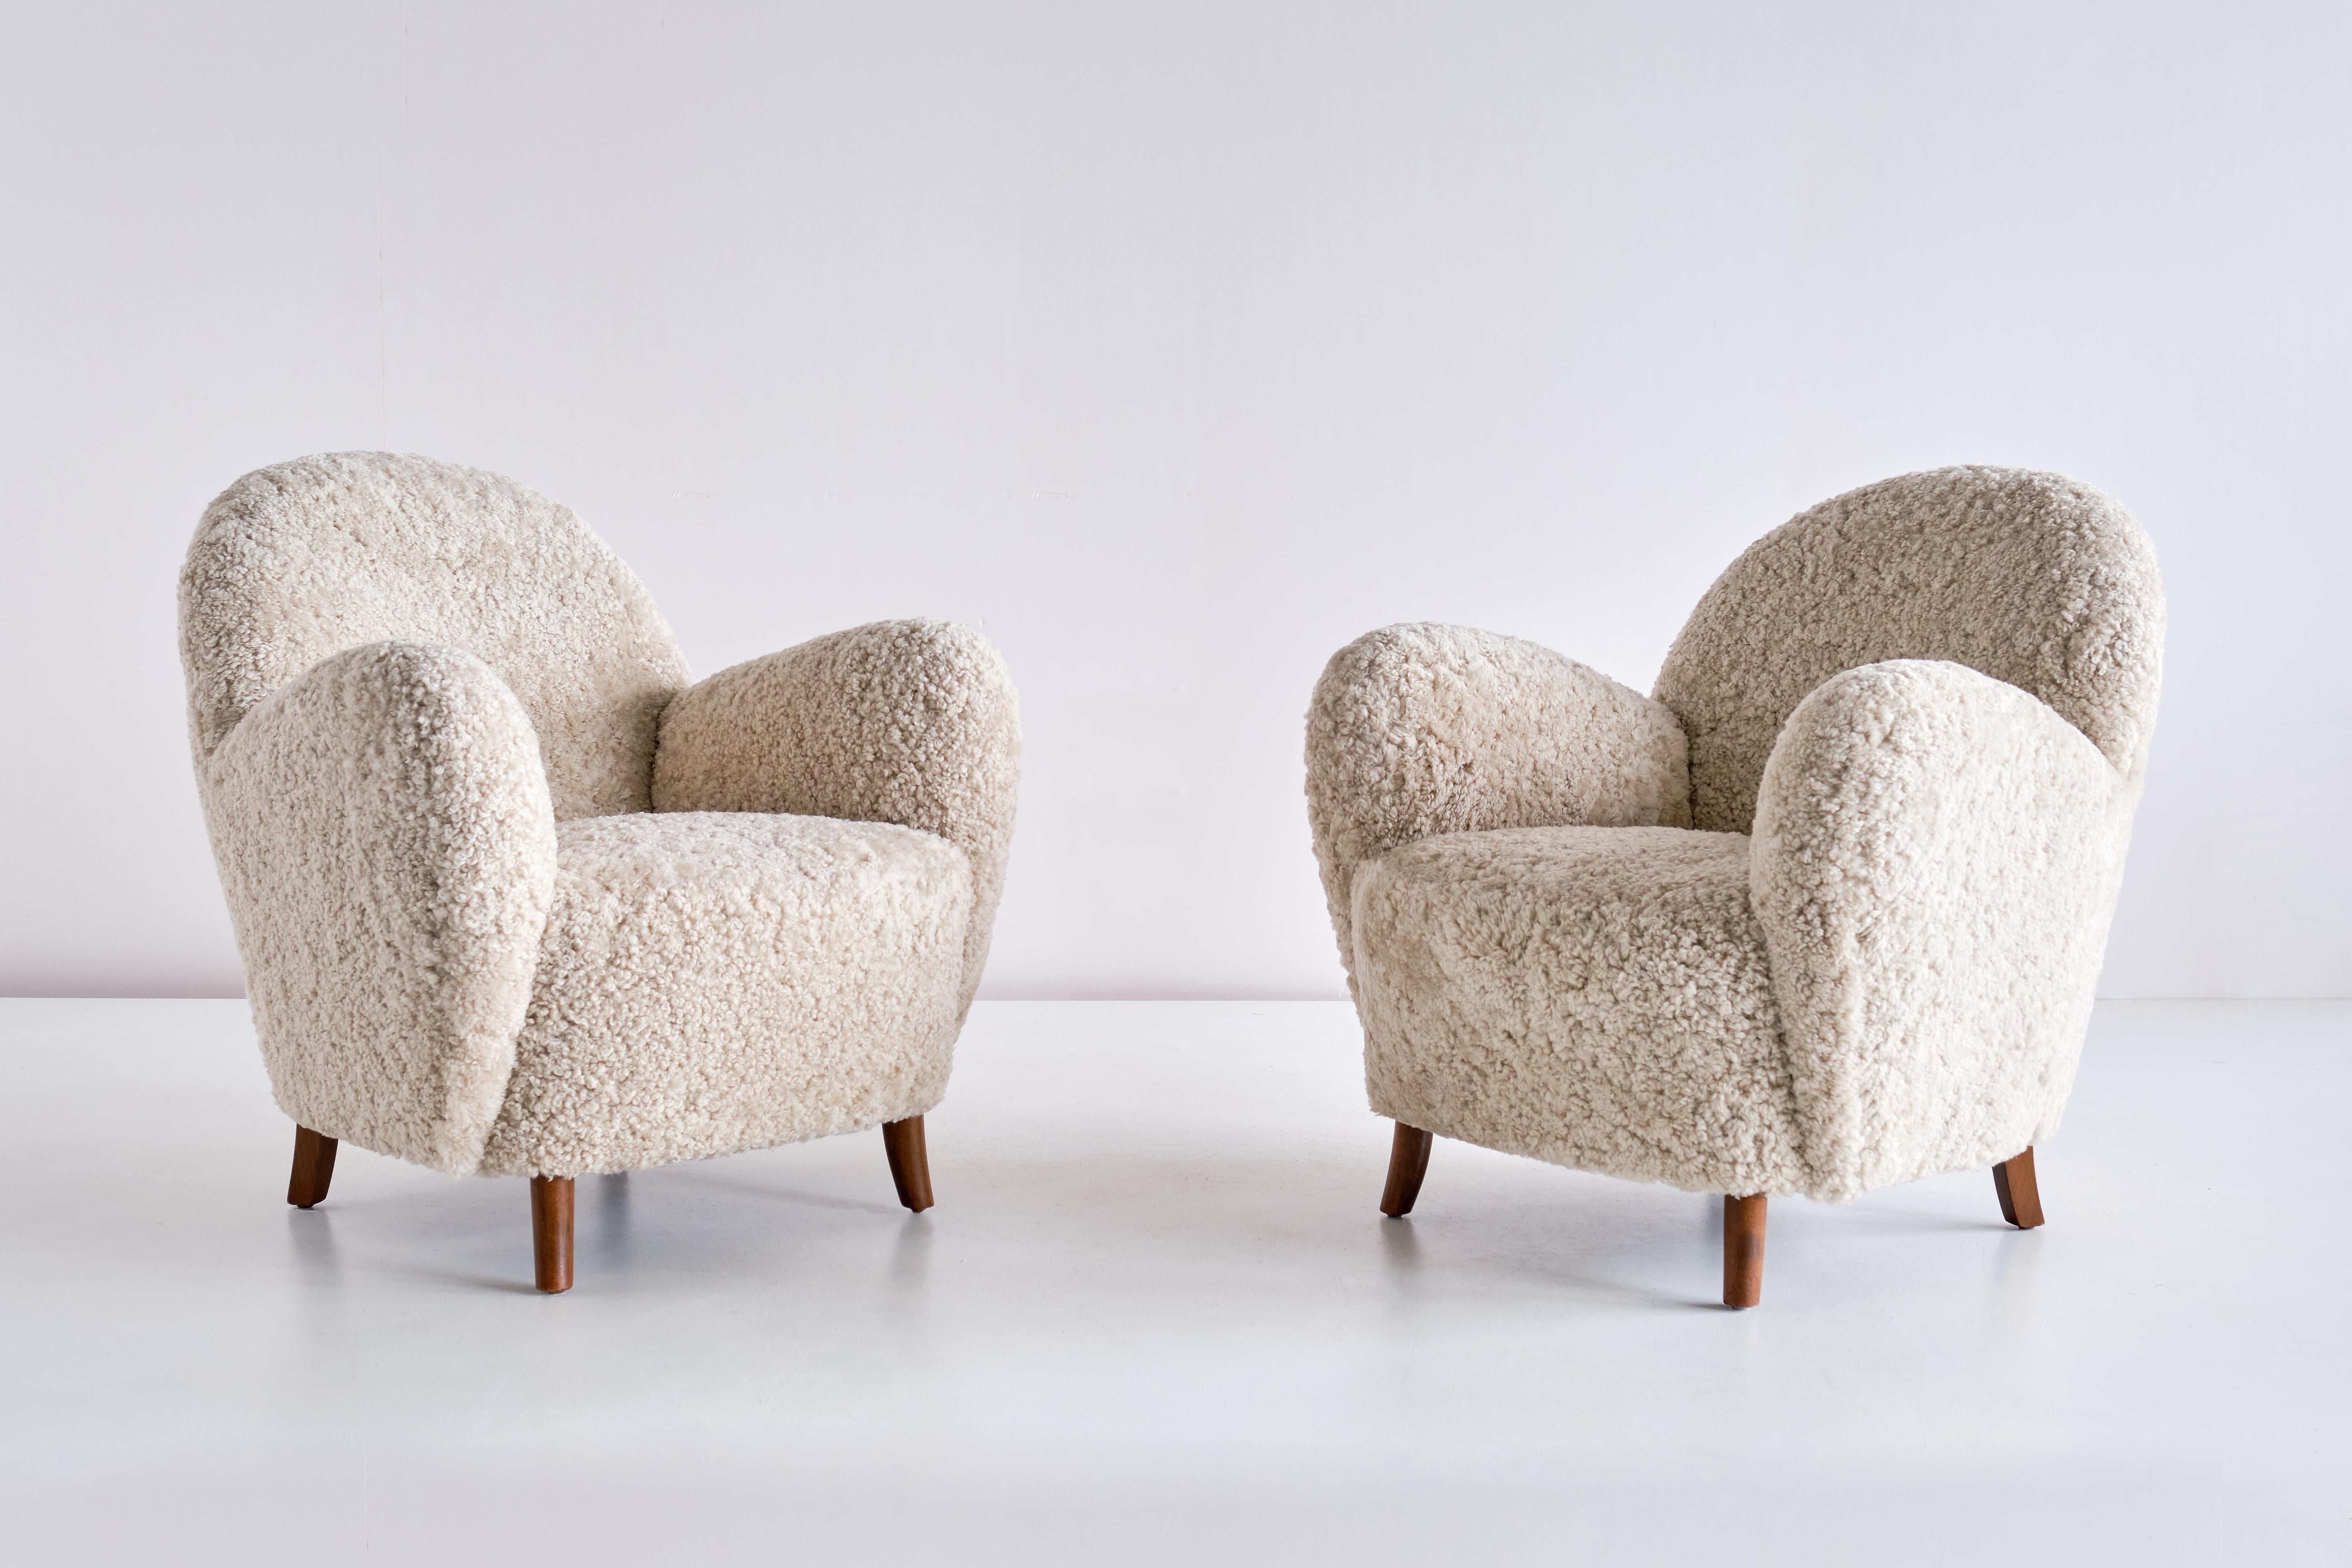 Cette paire de fauteuils très rare a été produite par l'ébéniste Thorald Madsen au Danemark au milieu des années 1930. La forme ronde et incurvée des accoudoirs et du dossier confère au design un aspect distinctif et moderne.

Les chaises ont été